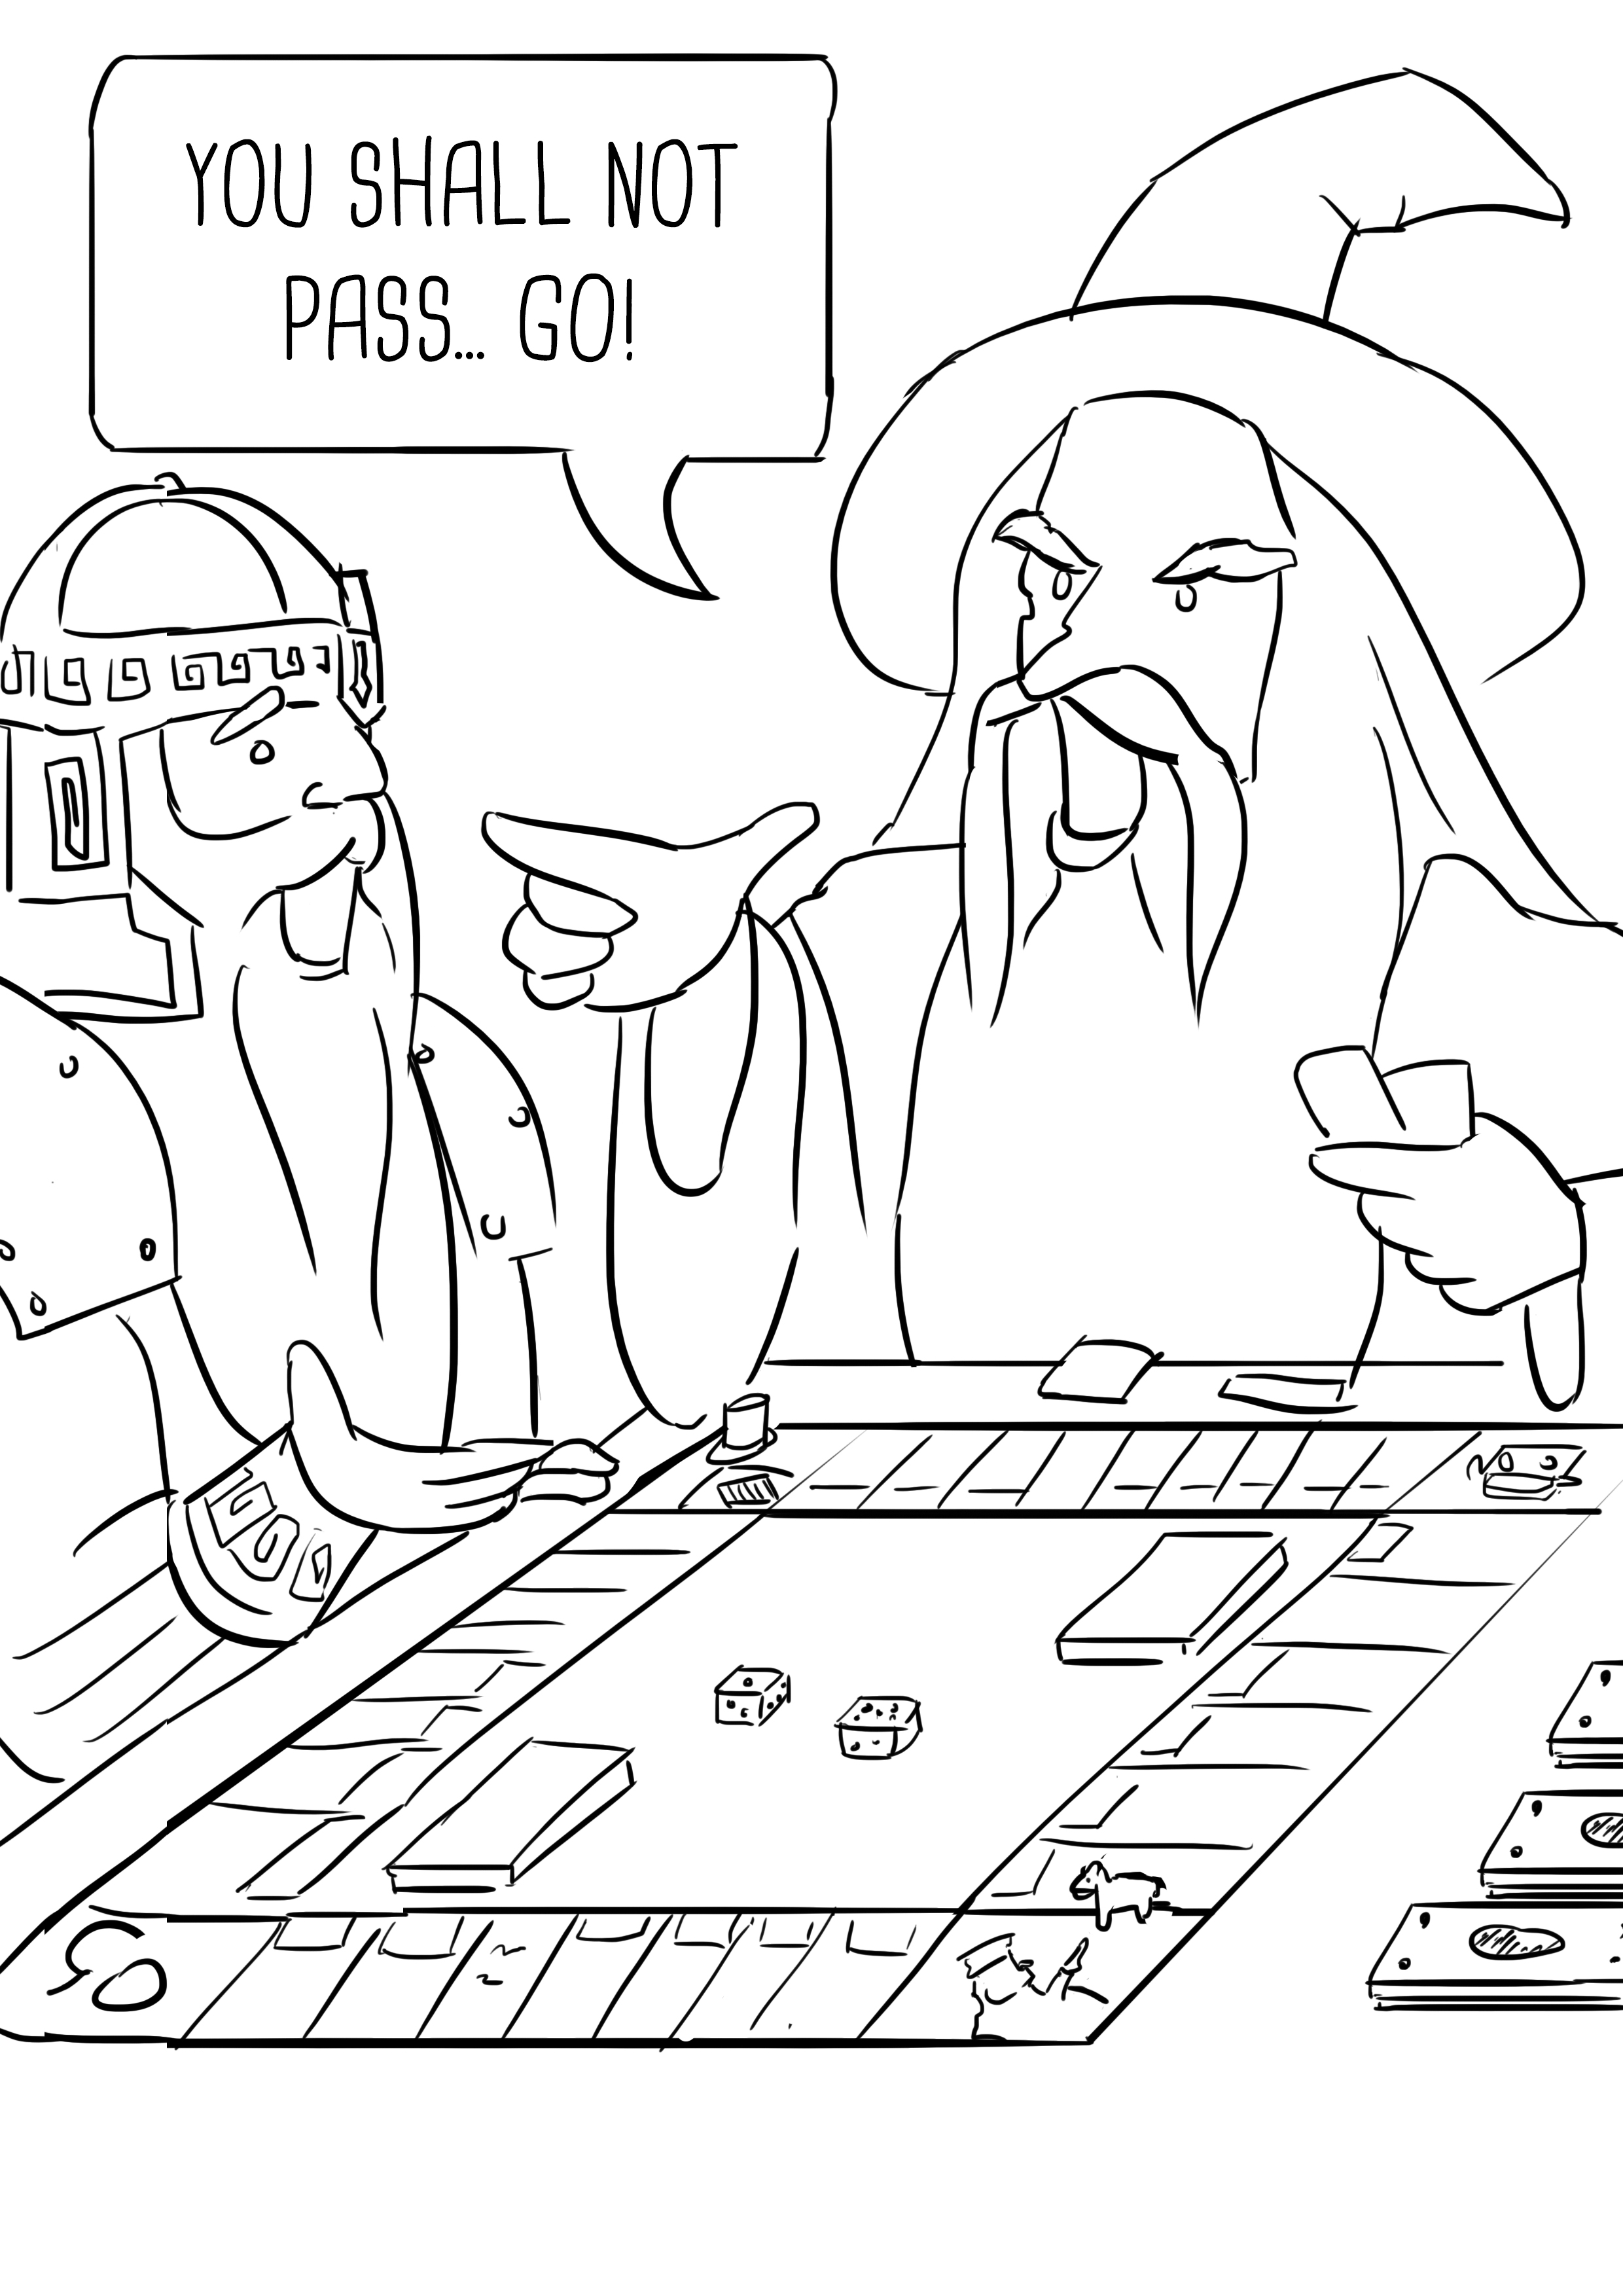 Gandalf and Gimli play Monopoly